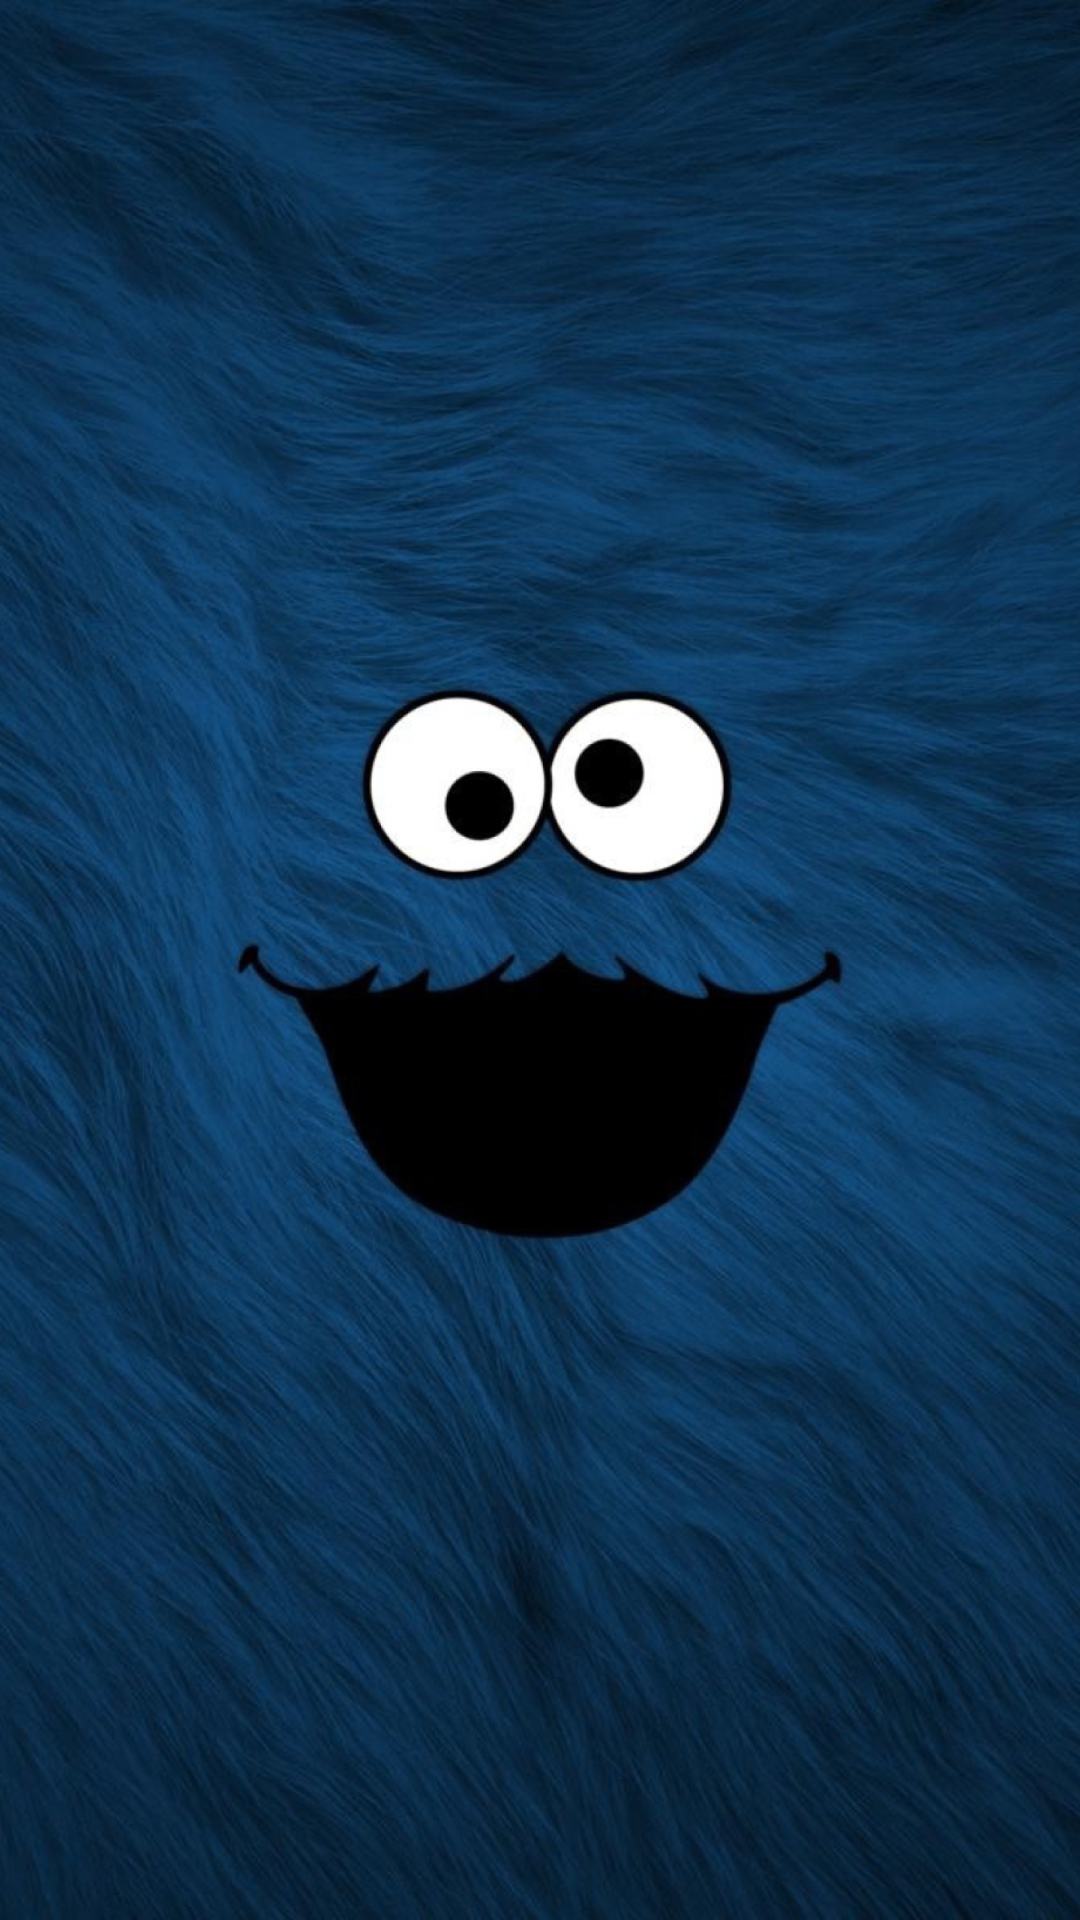 Cookie Monster wallpaper 1080x1920